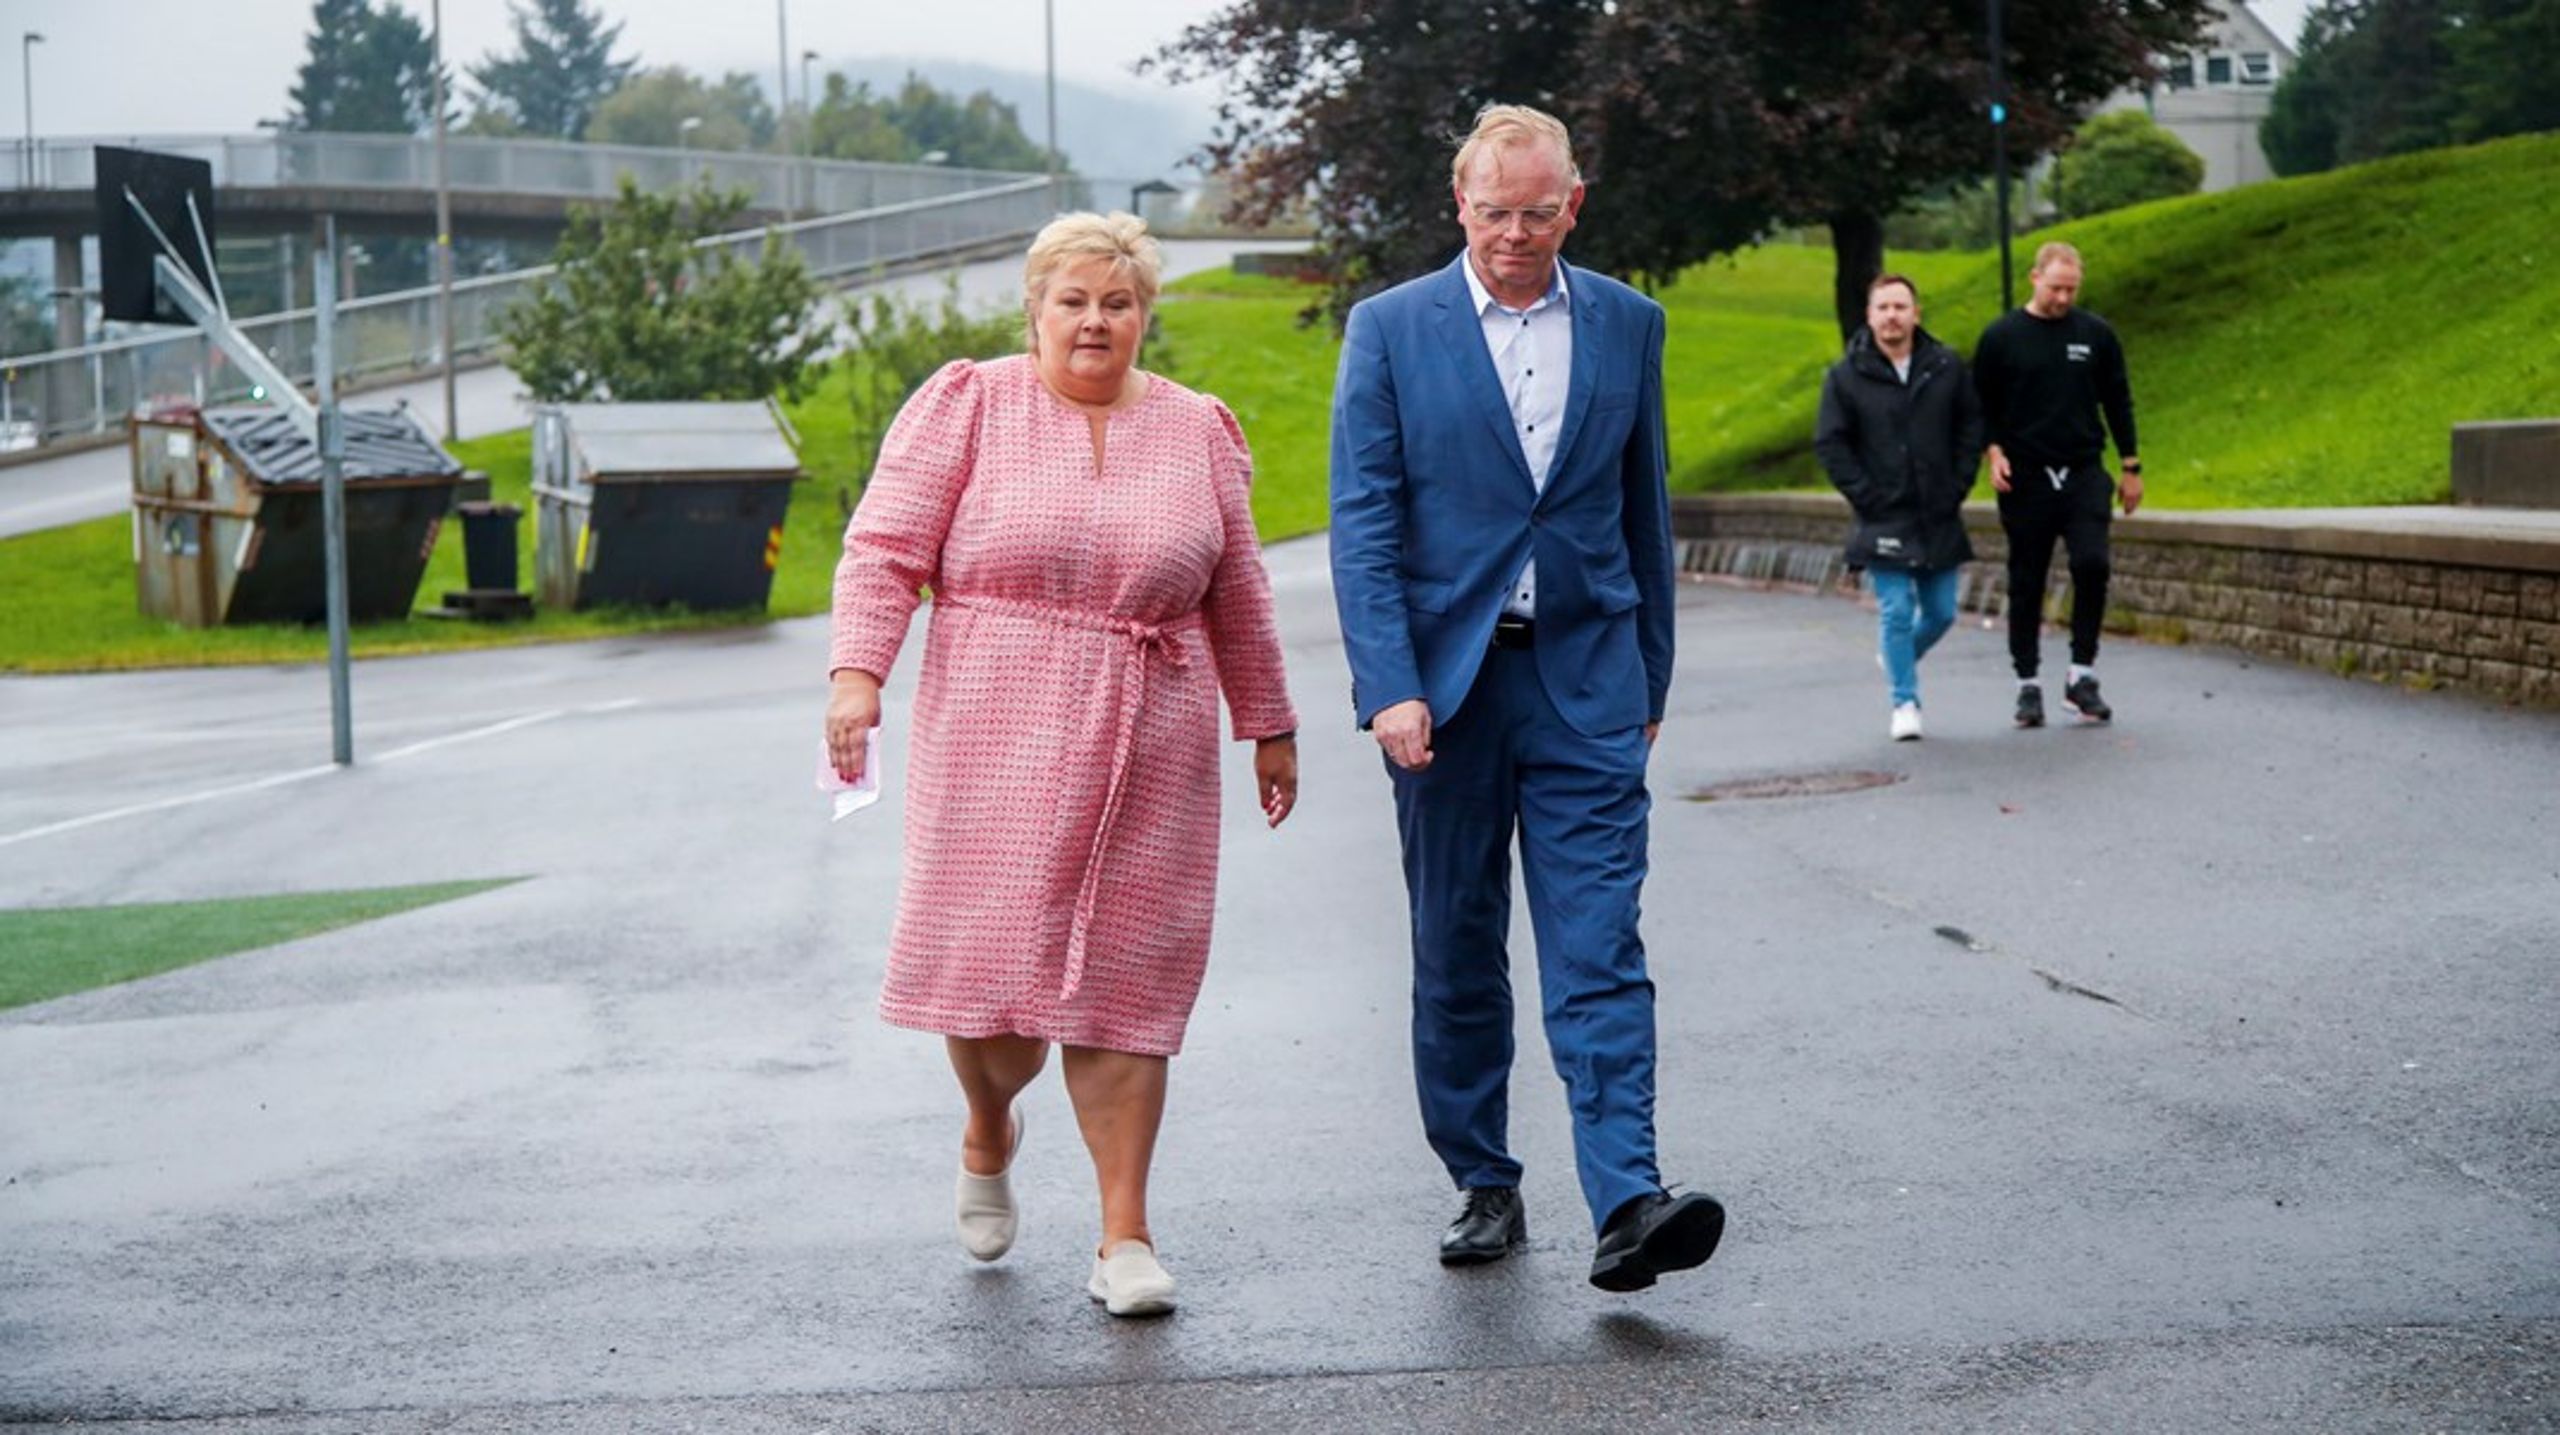 Sinde Finnes har bak ryggen på ektefelle og statminister Erna Solberg handlet aksjer. Hvor inhabil det har gjort henne og om hun uaktsomt kan ha bidratt til innsideinformasjon, vil påvirke hennes politiske fremtid.